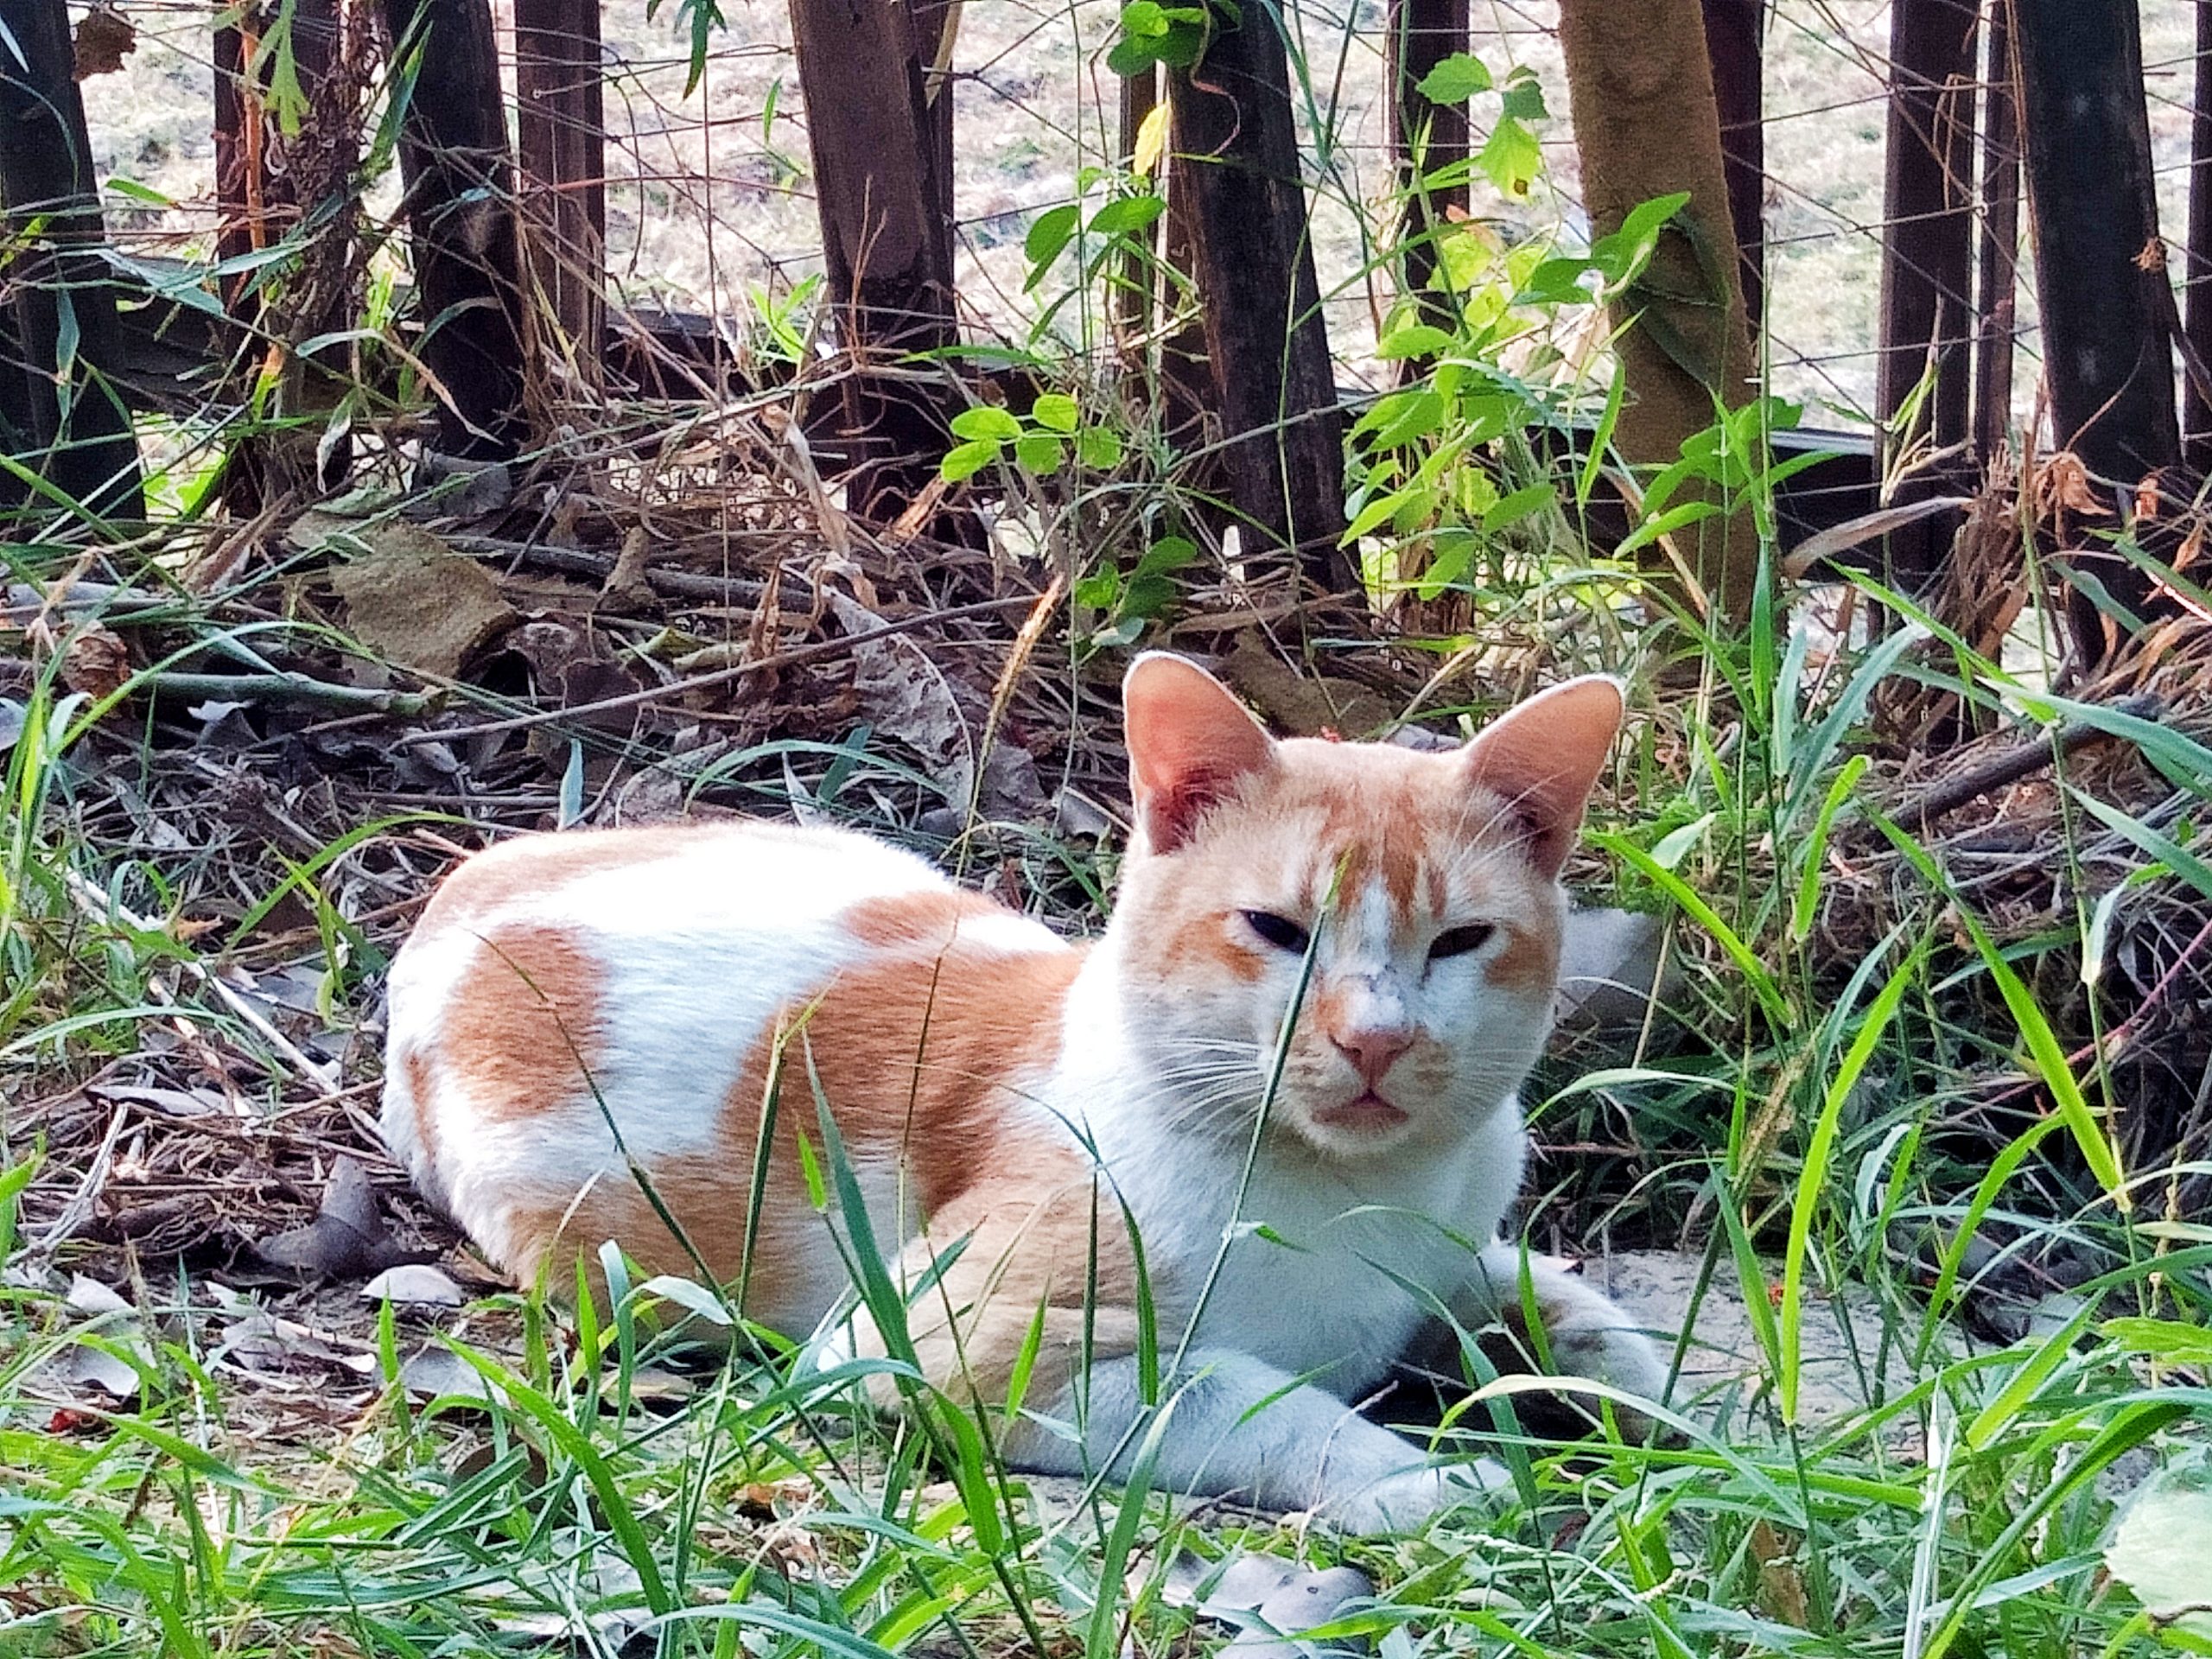 A beautiful cat in a jungle